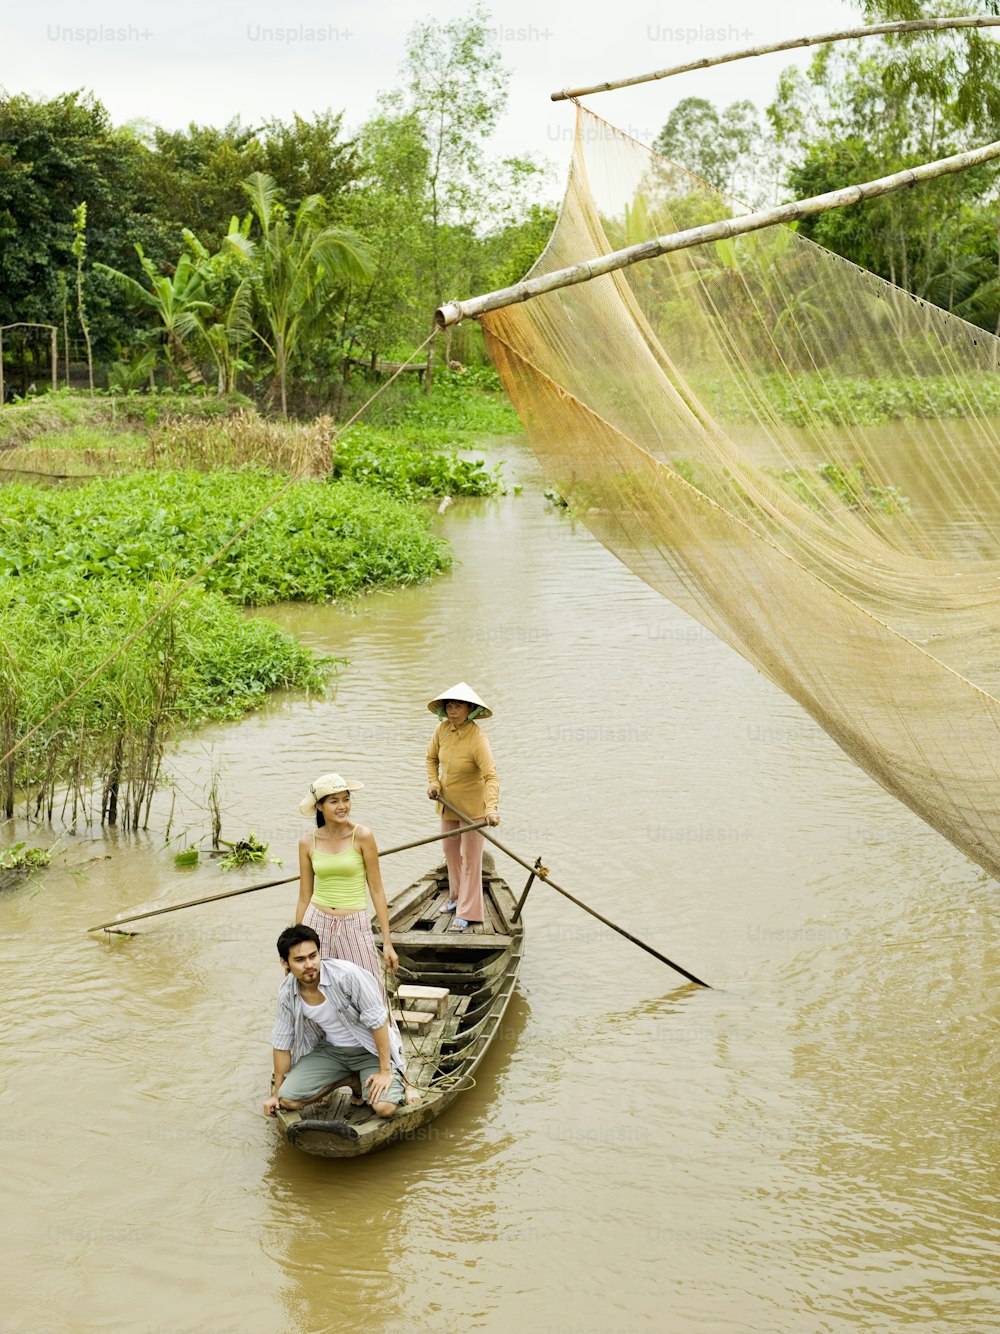 강에서 보트 위에 타고 있는 한 무리의 사람들